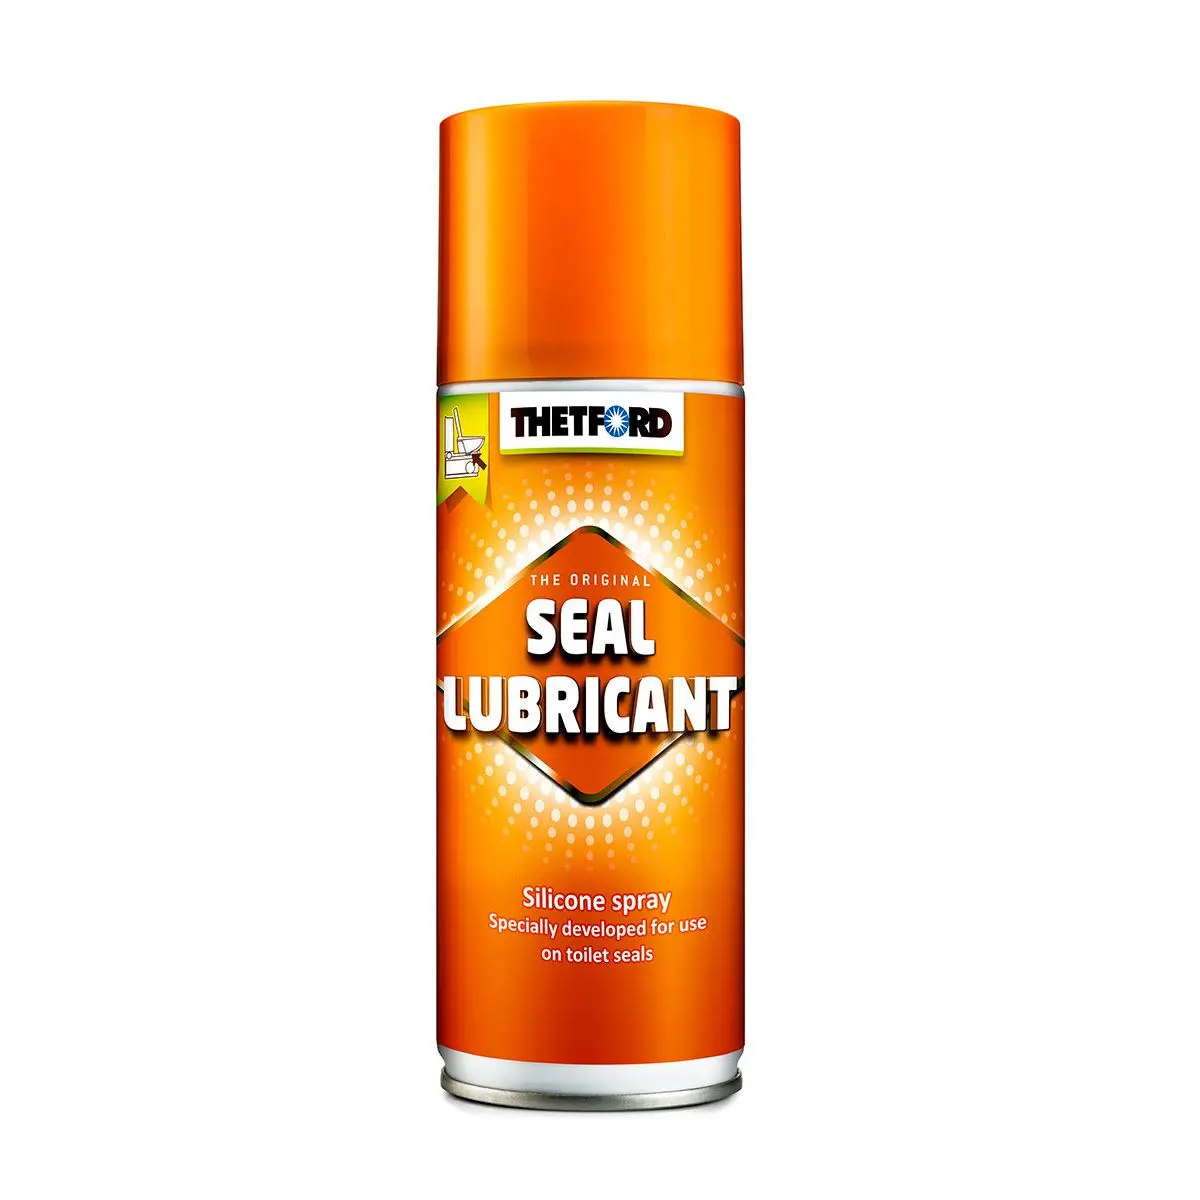 Gumiápoló spray Seal Lubricant - 200 ml